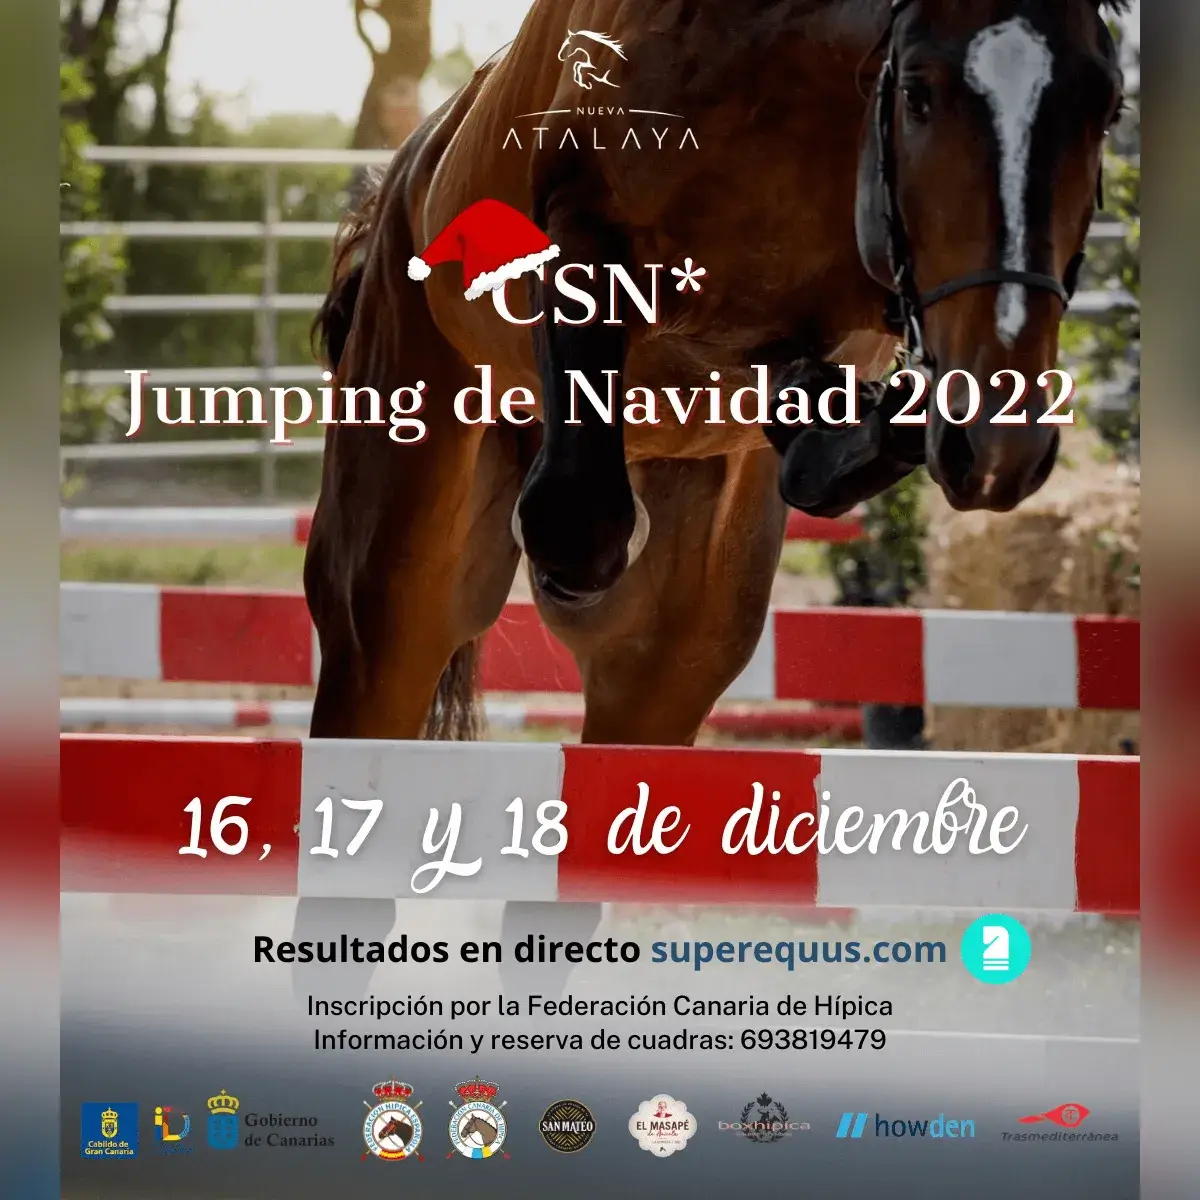 Poster of CSN* Jumping de Navidad 2022